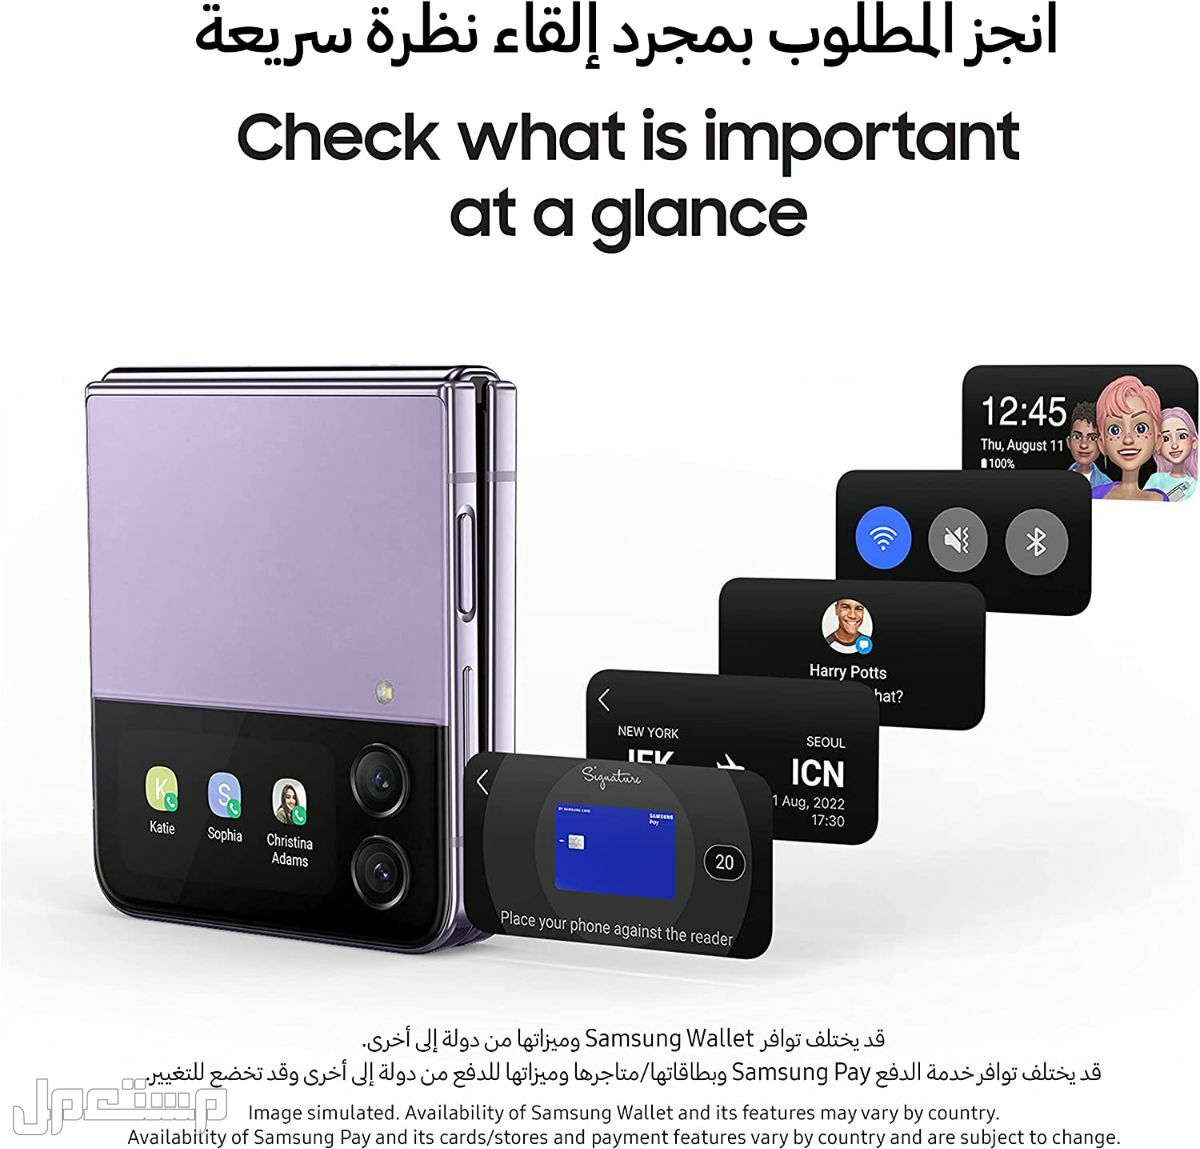 جوال جلاكسي: تعرف على مواصفات وأسعار وأهم مميزات جوال جلاكسي في موريتانيا هاتف جلاكسي